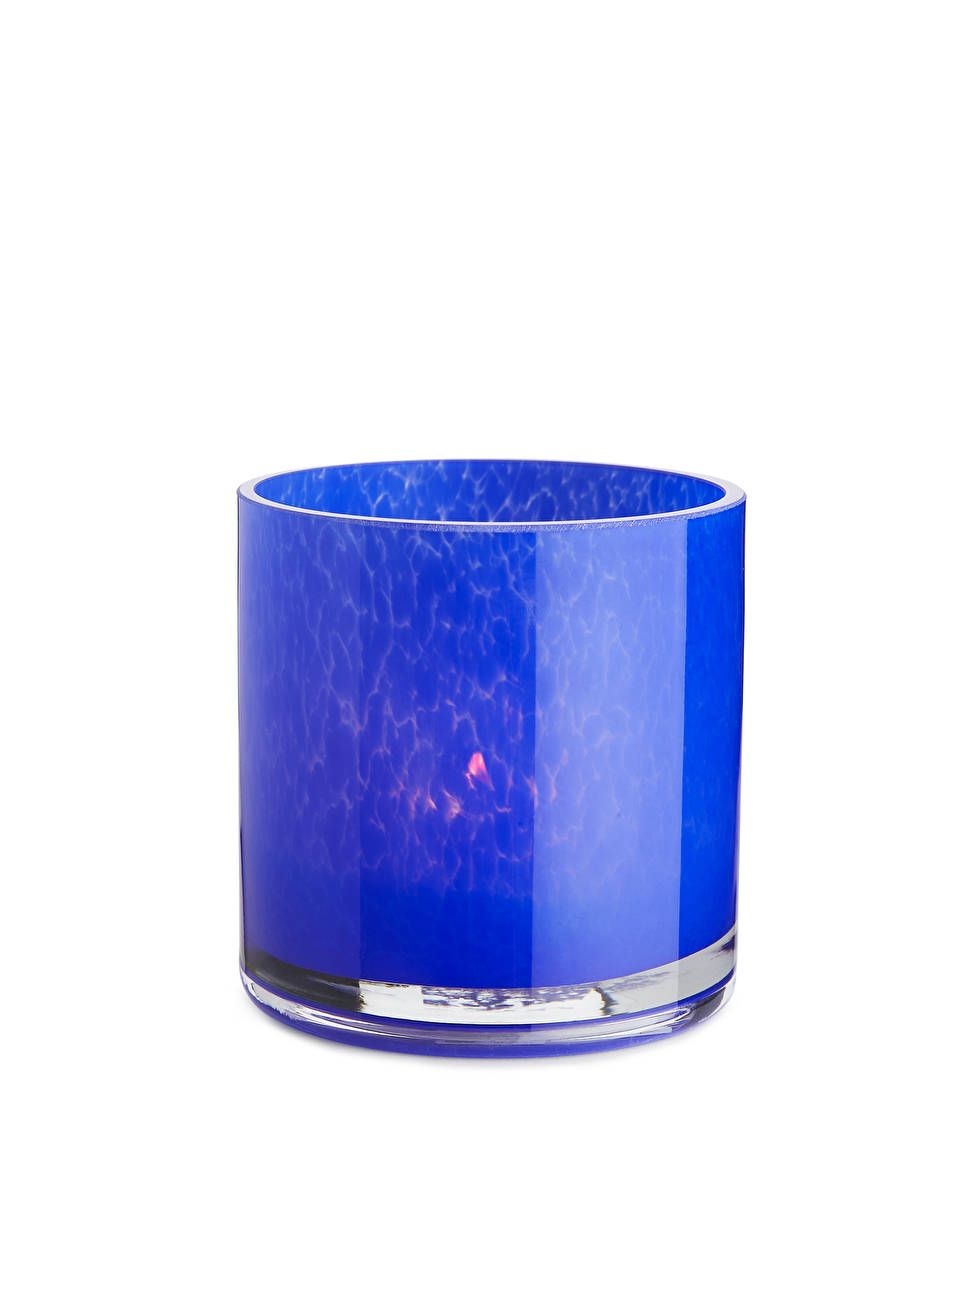 Glass Candle Holder 9 cm - Blue - ARKET GB | ARKET